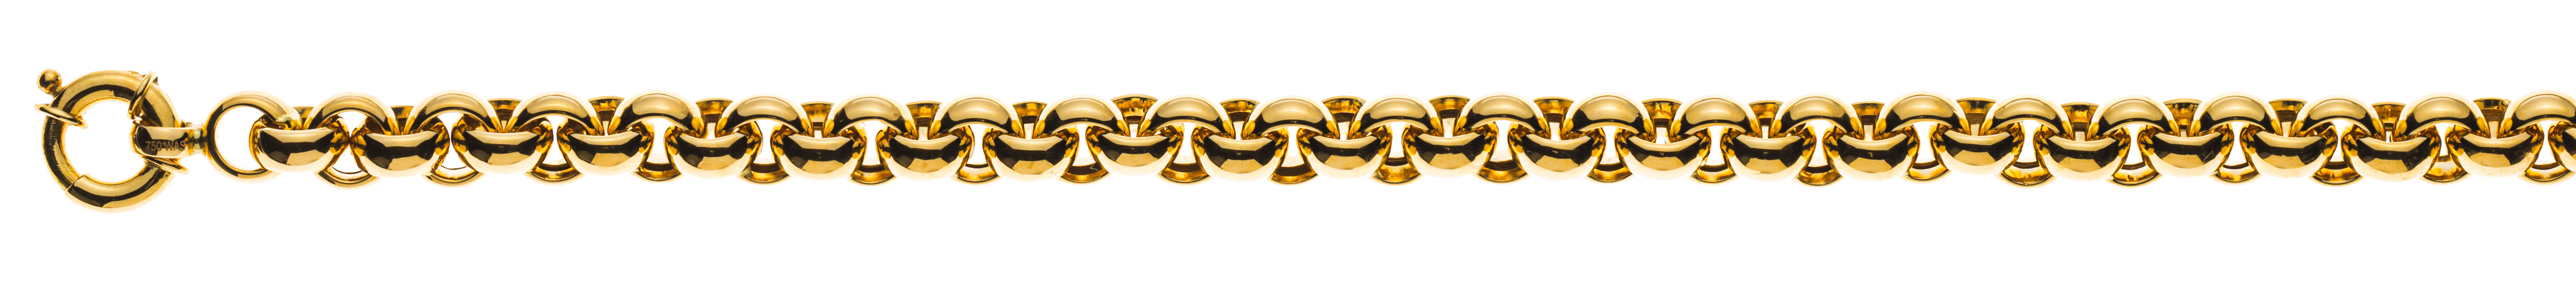 AURONOS Prestige Necklace yellow gold 18K semi-solid pea chain 45cm 7mm